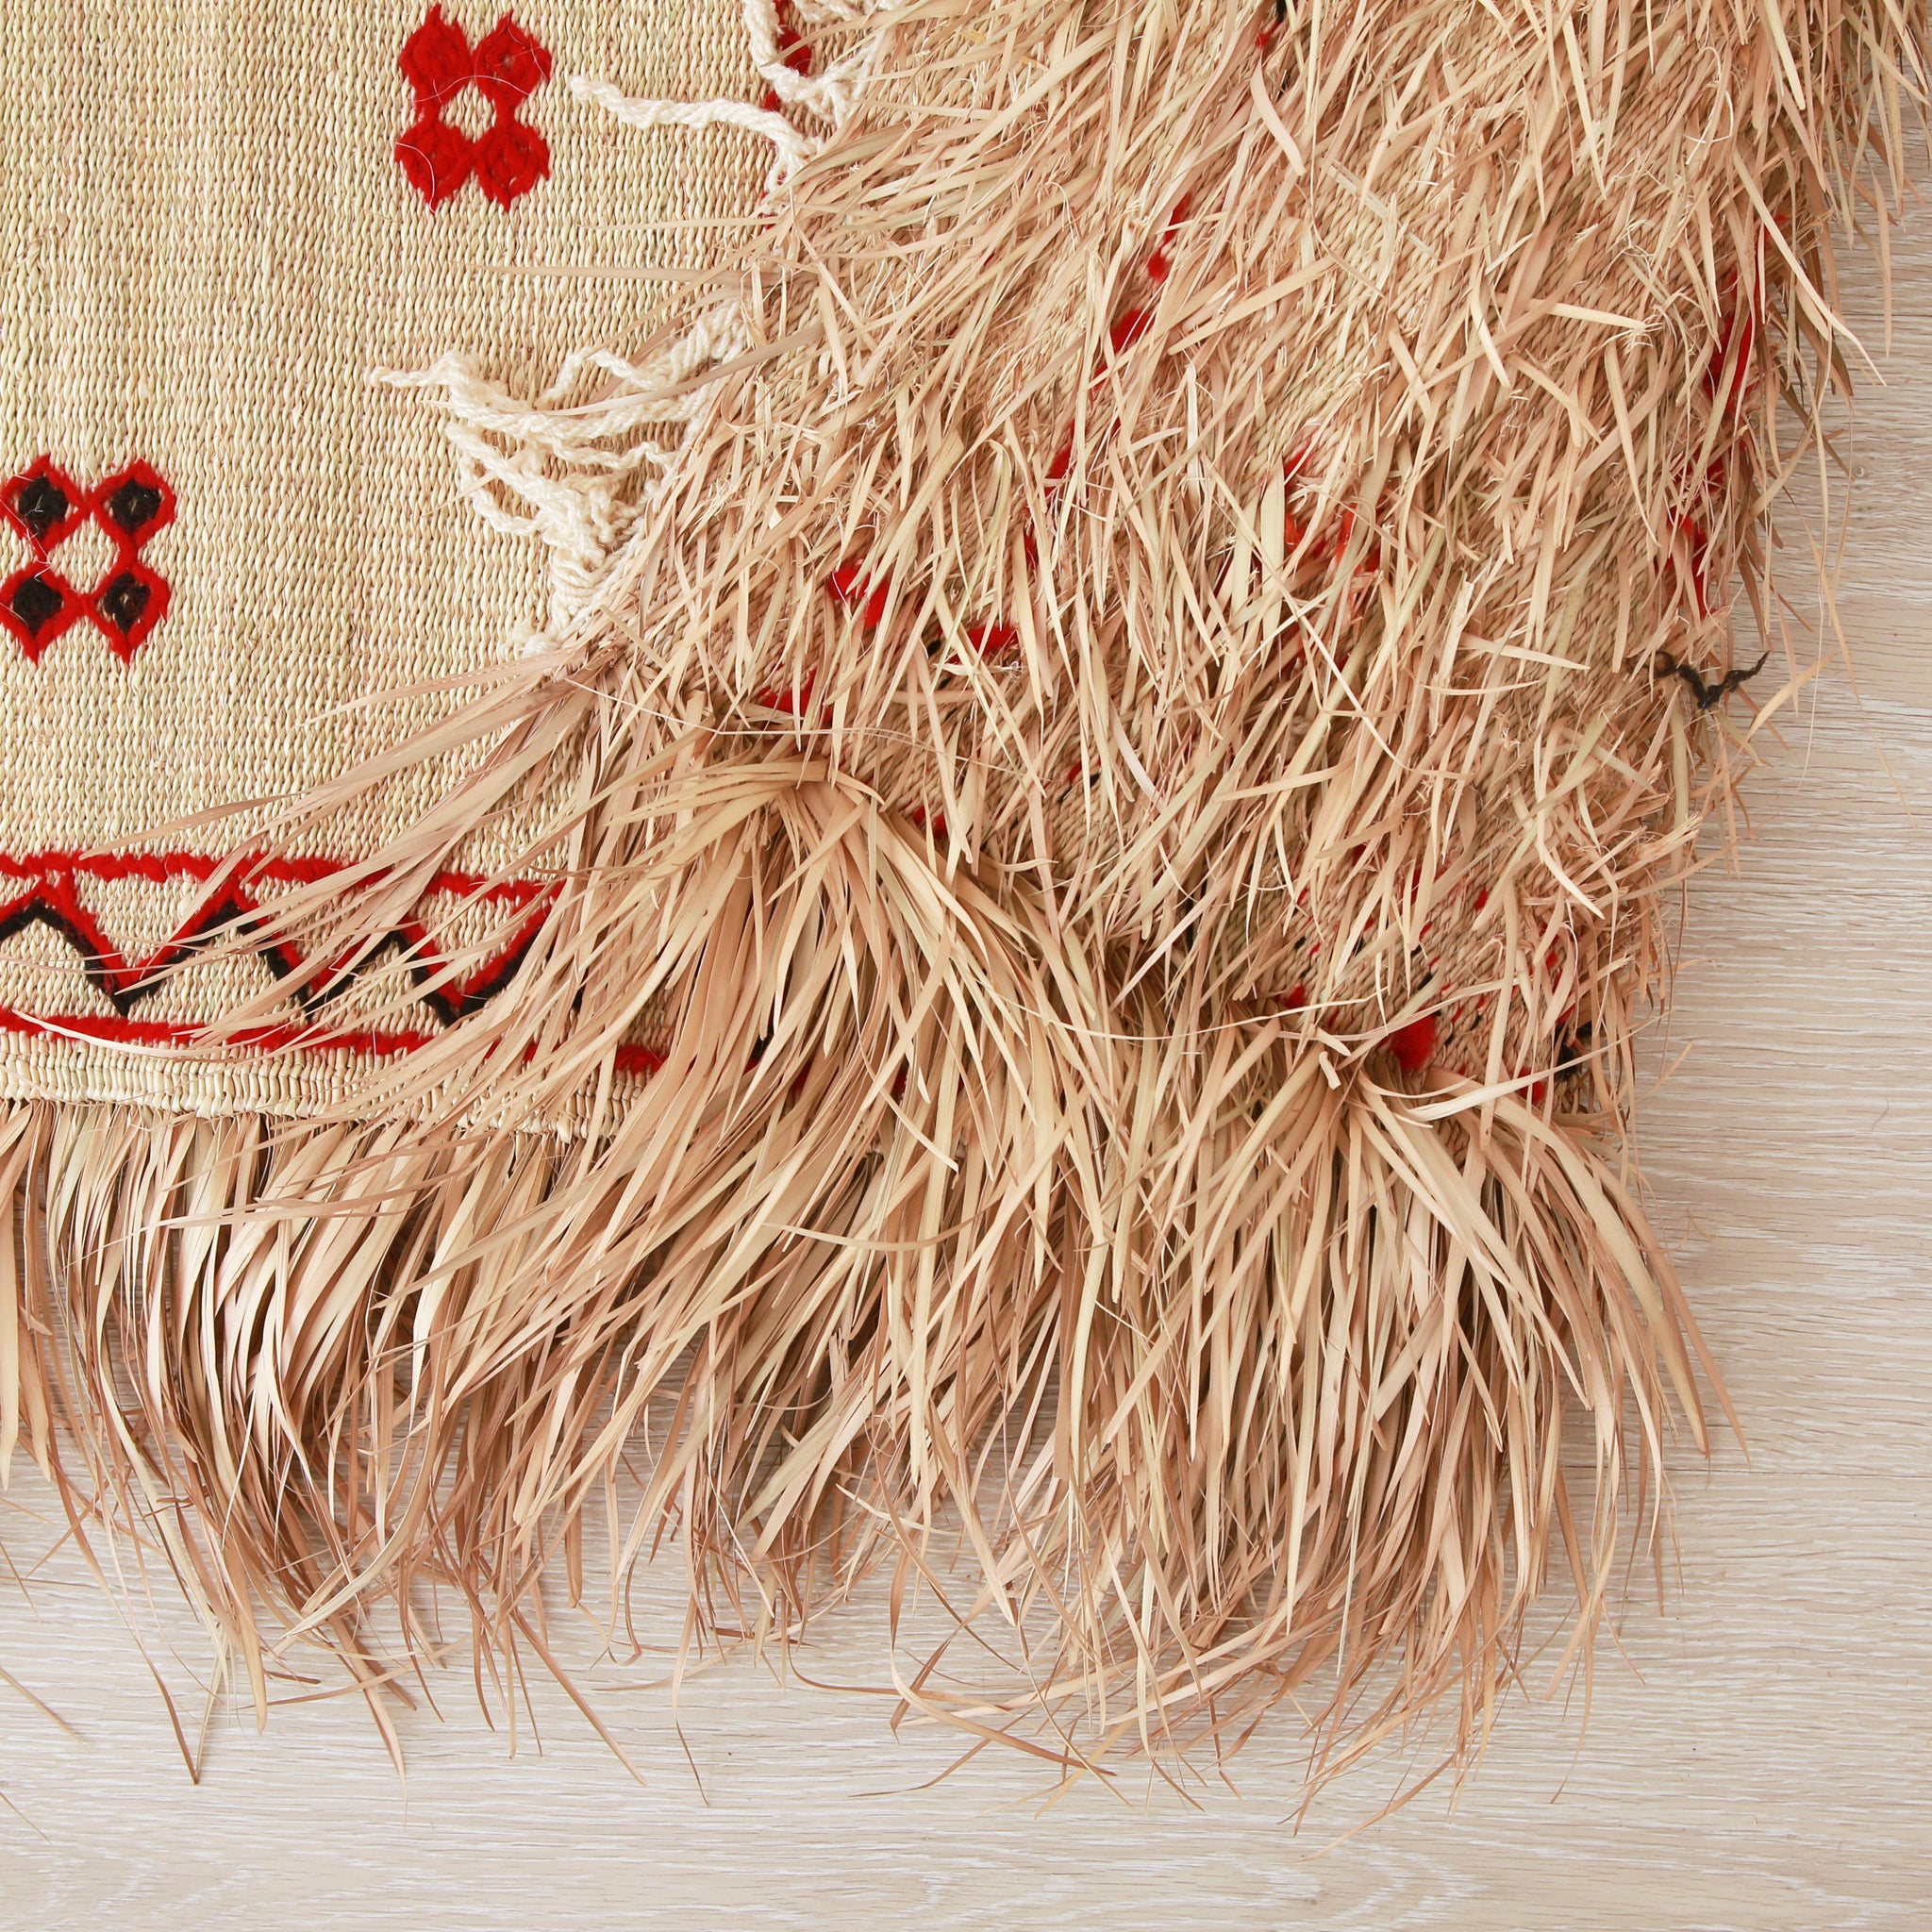 dettaglio del retro di una stuoia hassira intrecciata a mano con paglia di palma e ricamata con con lana rossa e nera.